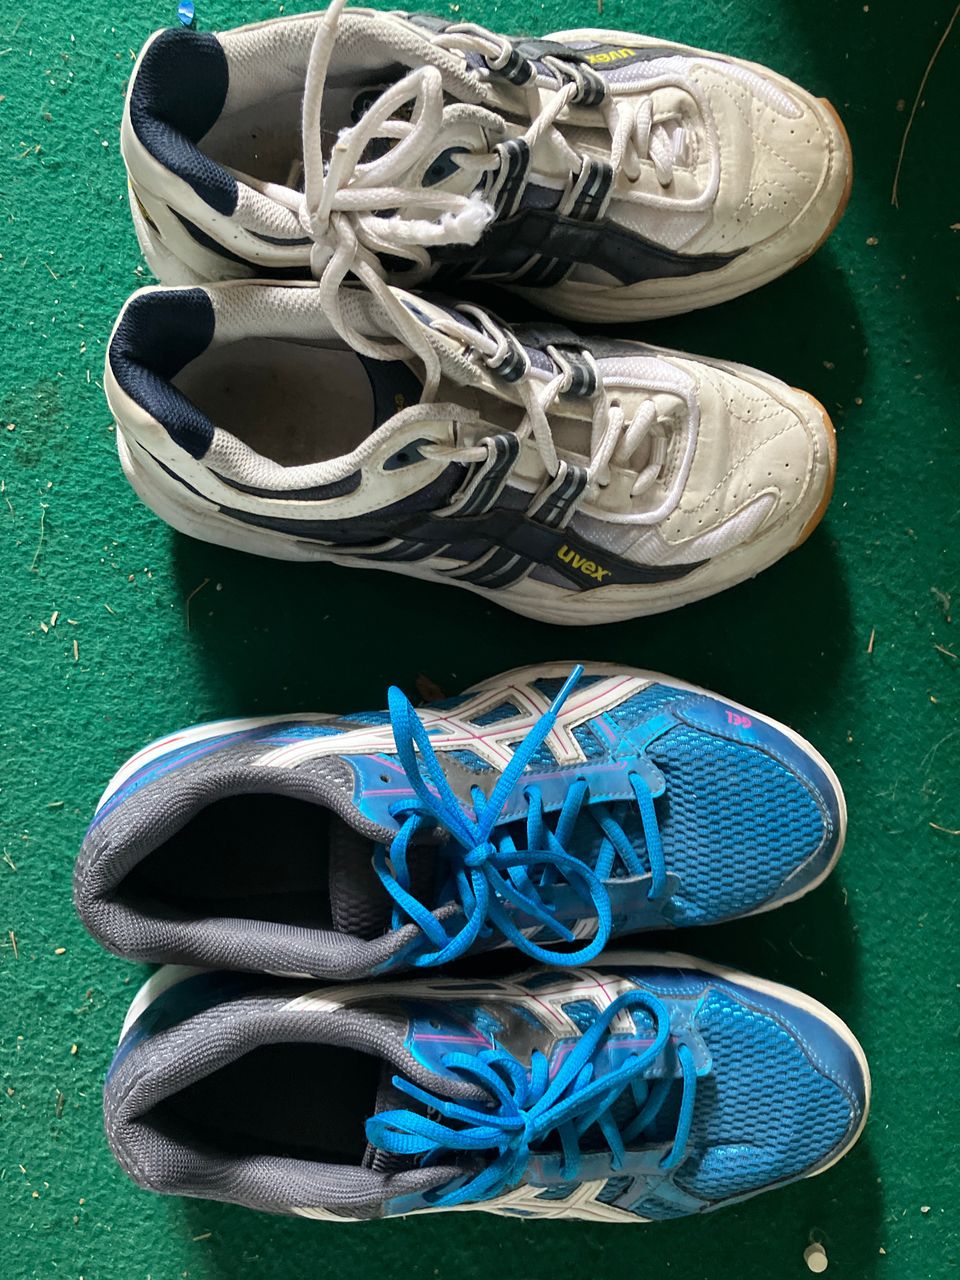 Kahdet kengät ulkoiluun ja urheiluun